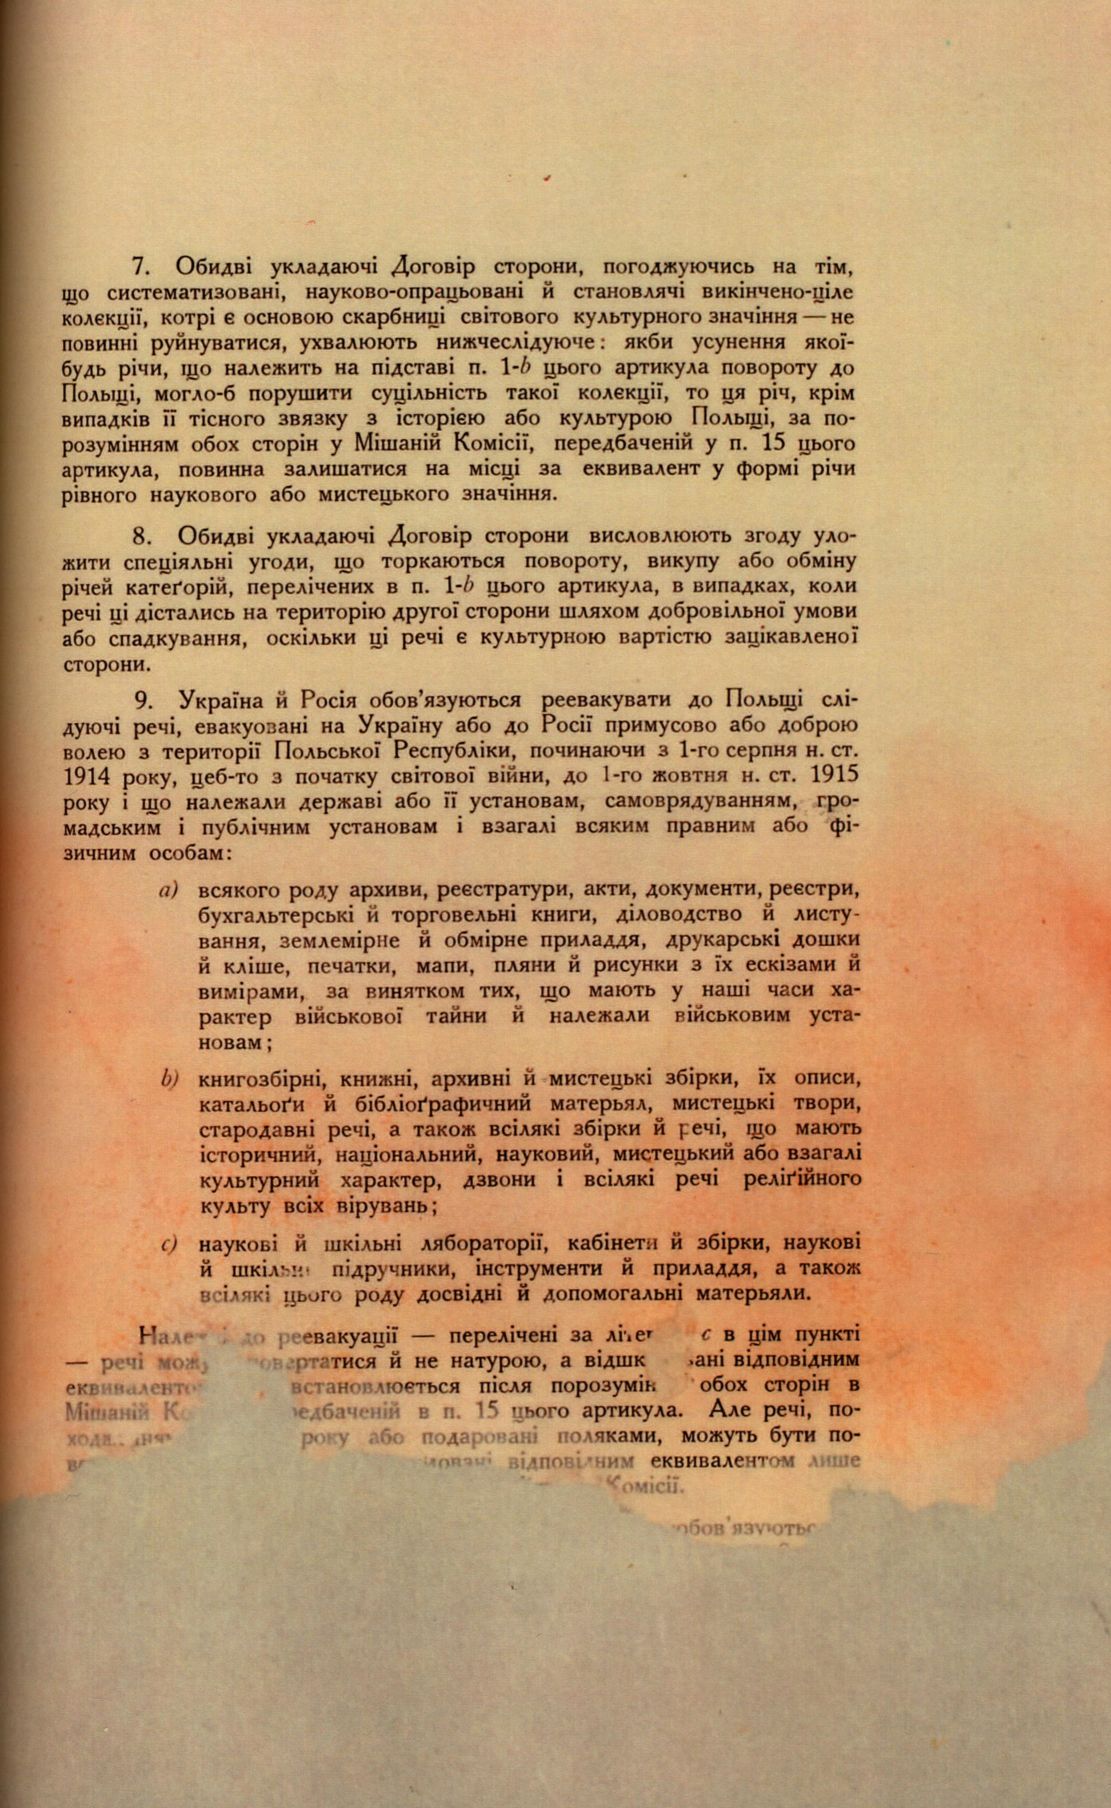 Traktat Pokoju między Polską a Rosją i Ukrainą podpisany w Rydze dnia 18 marca 1921 roku, s. 45, MSZ, sygn. 6739.